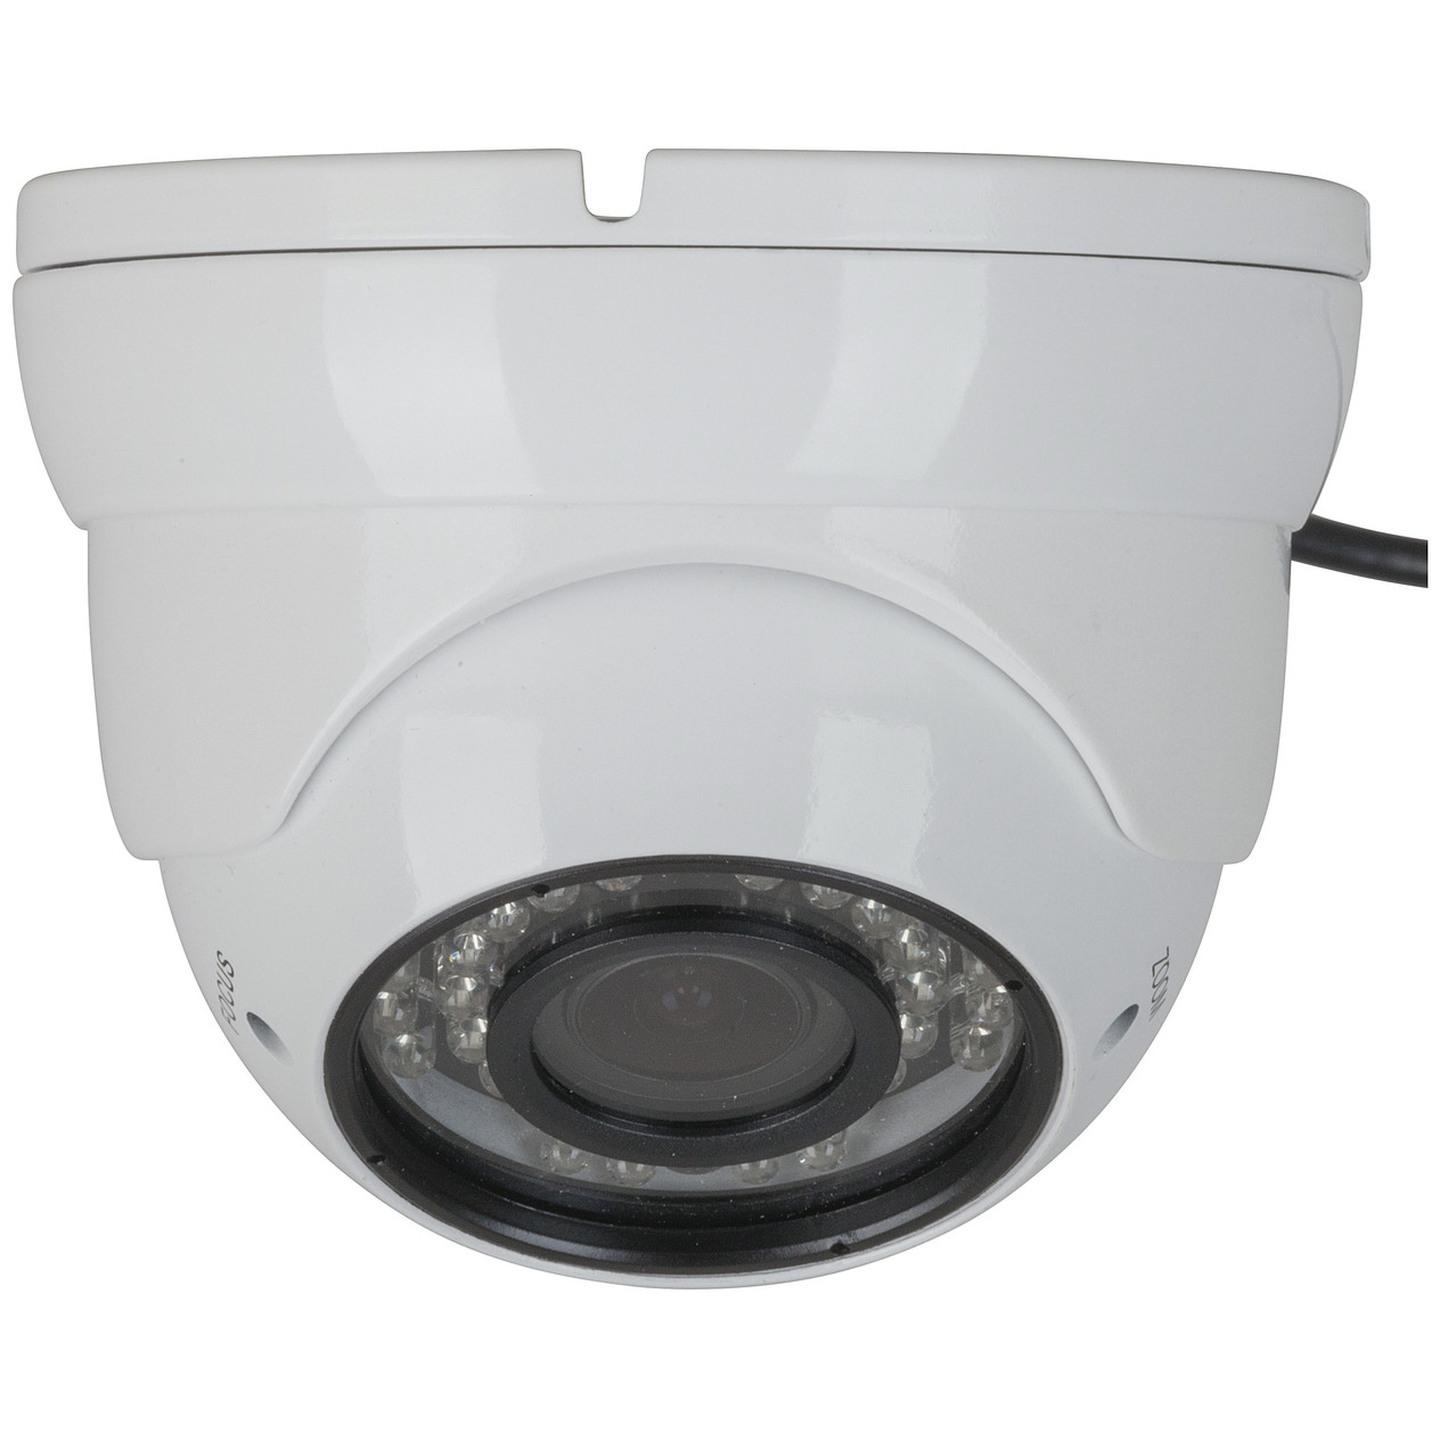 720p AHD Vari-Focal Dome Camera with IR